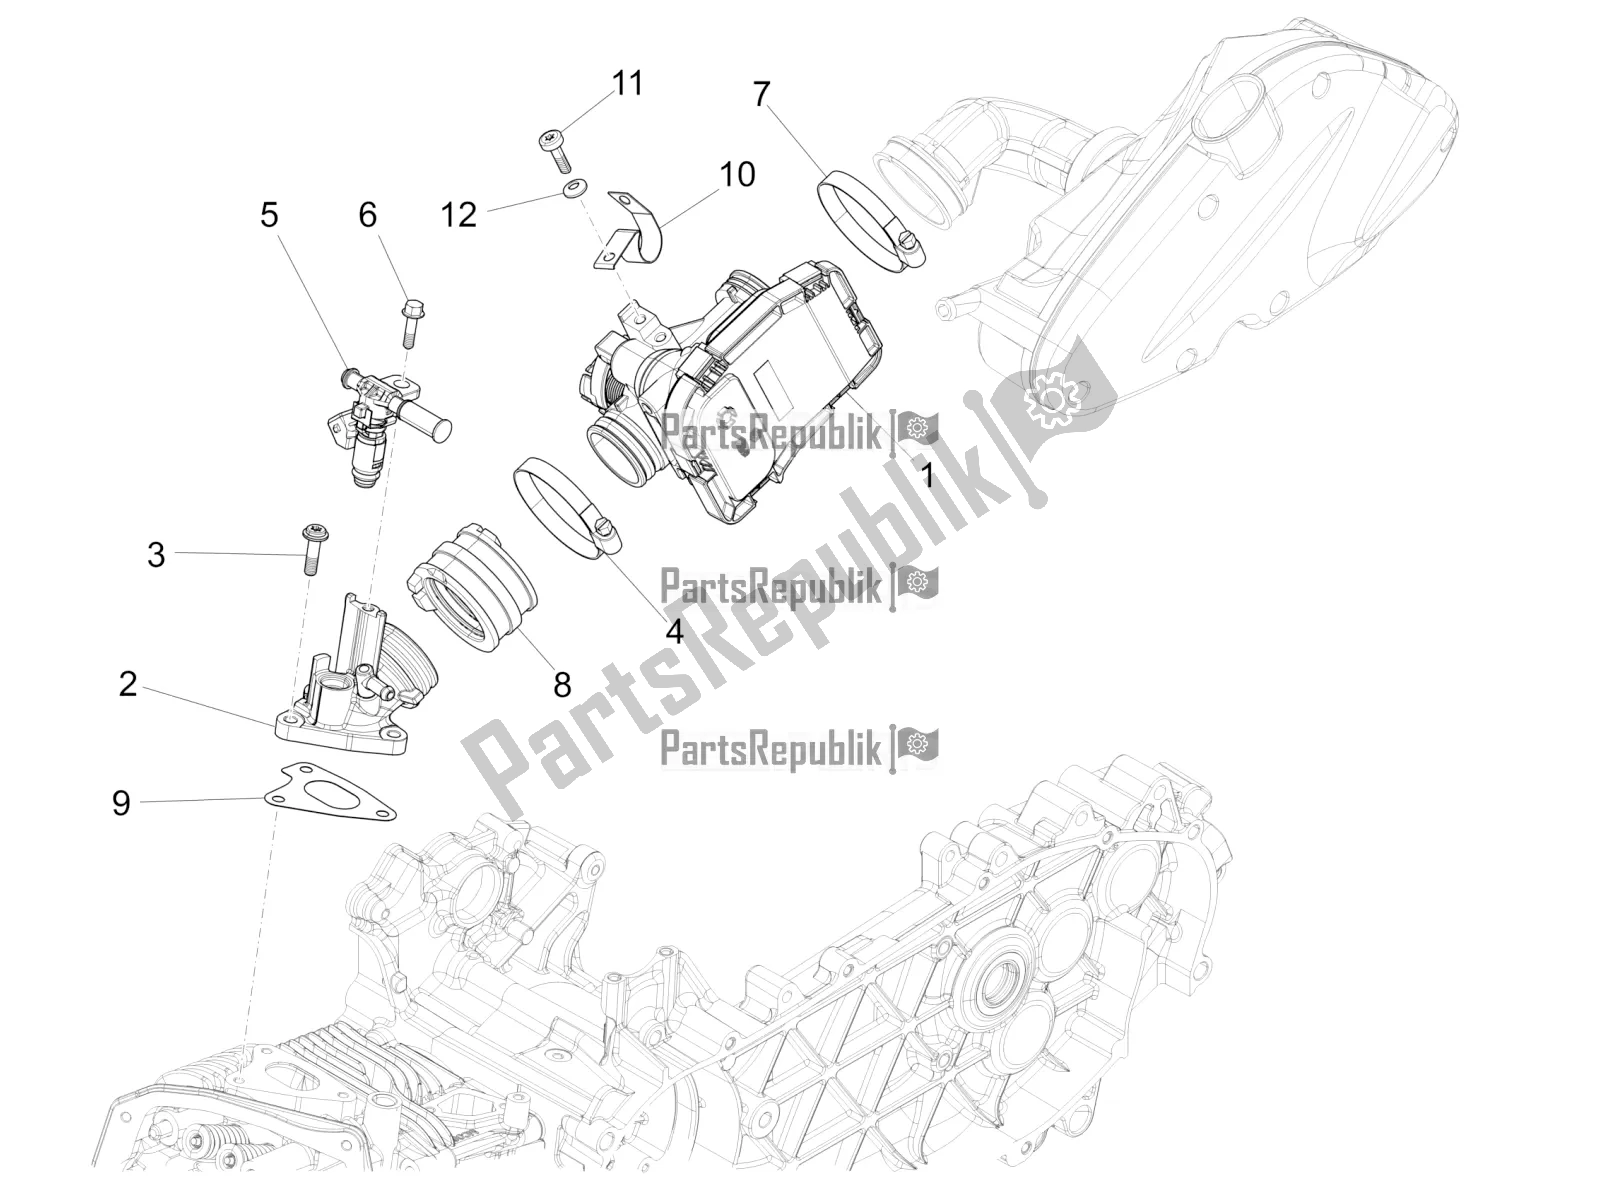 Toutes les pièces pour le Throttle Body - Injector - Induction Joint du Piaggio FLY 150 3V IE 2016